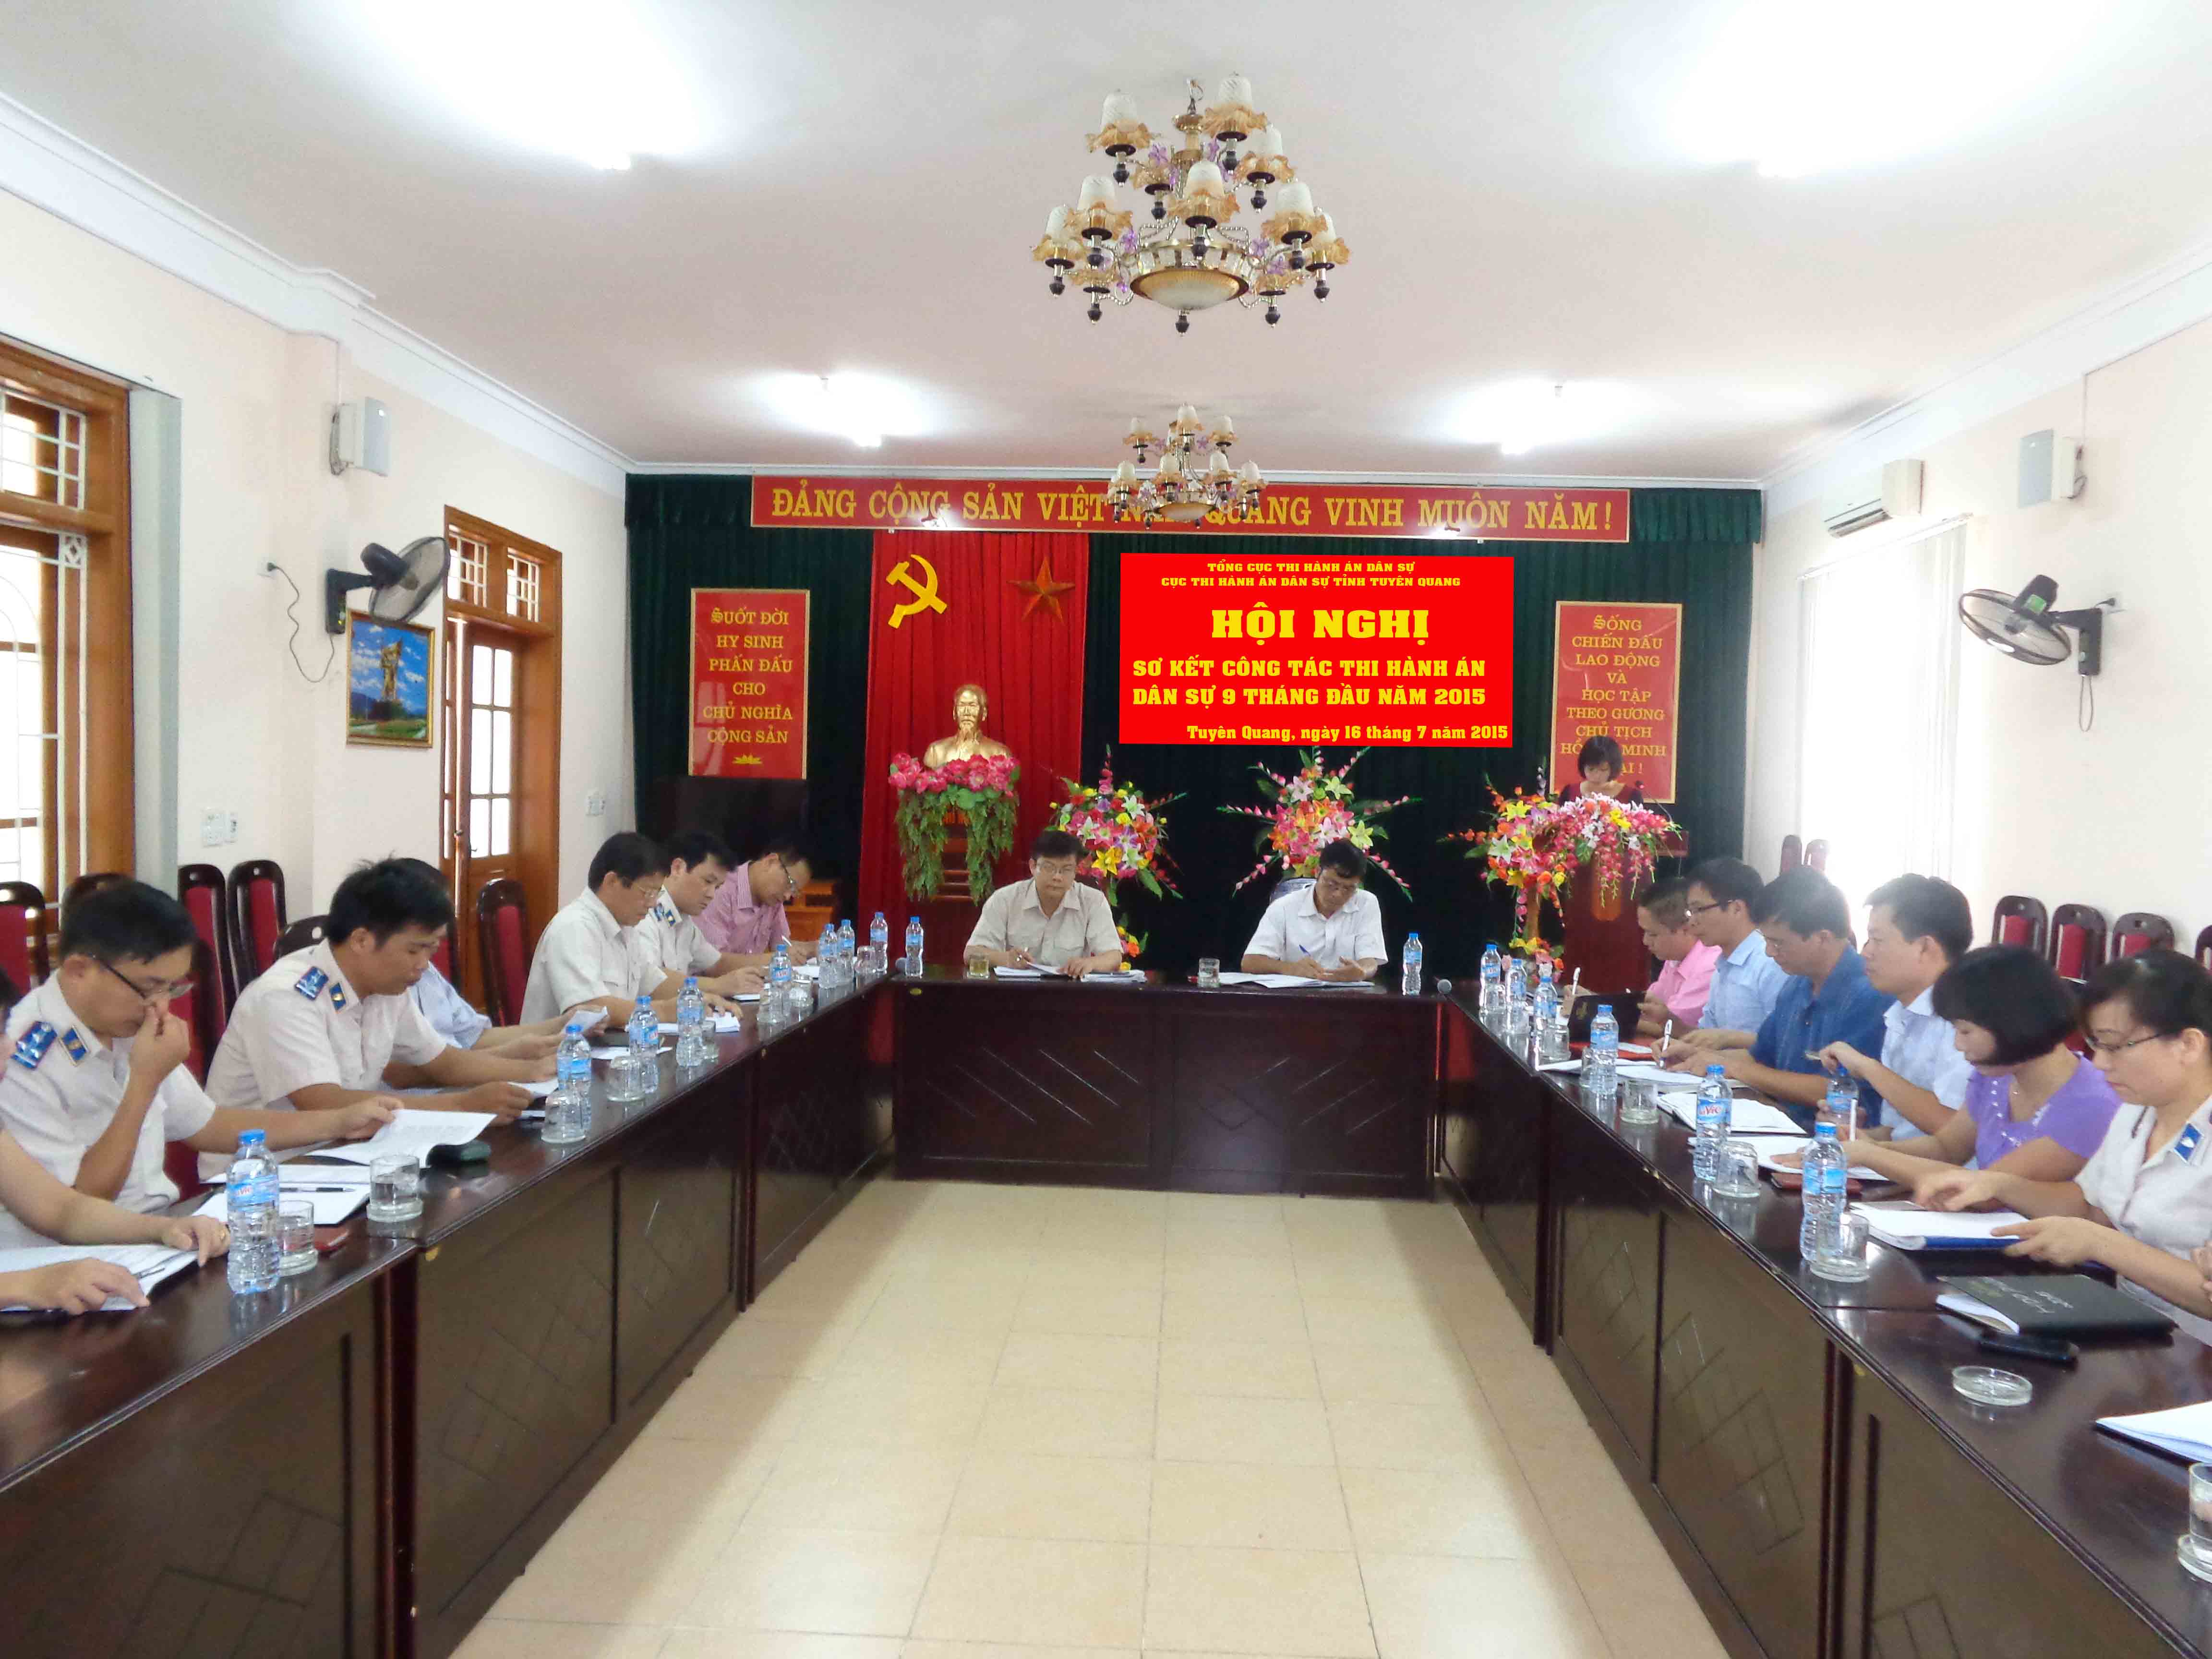 Cục Thi hành án dân sự tỉnh Tuyên Quang  tổ chức Hội nghị giao ban công tác THADS 9 tháng đầu năm, nhiệm vụ, giải pháp 3 tháng cuối năm 2015.